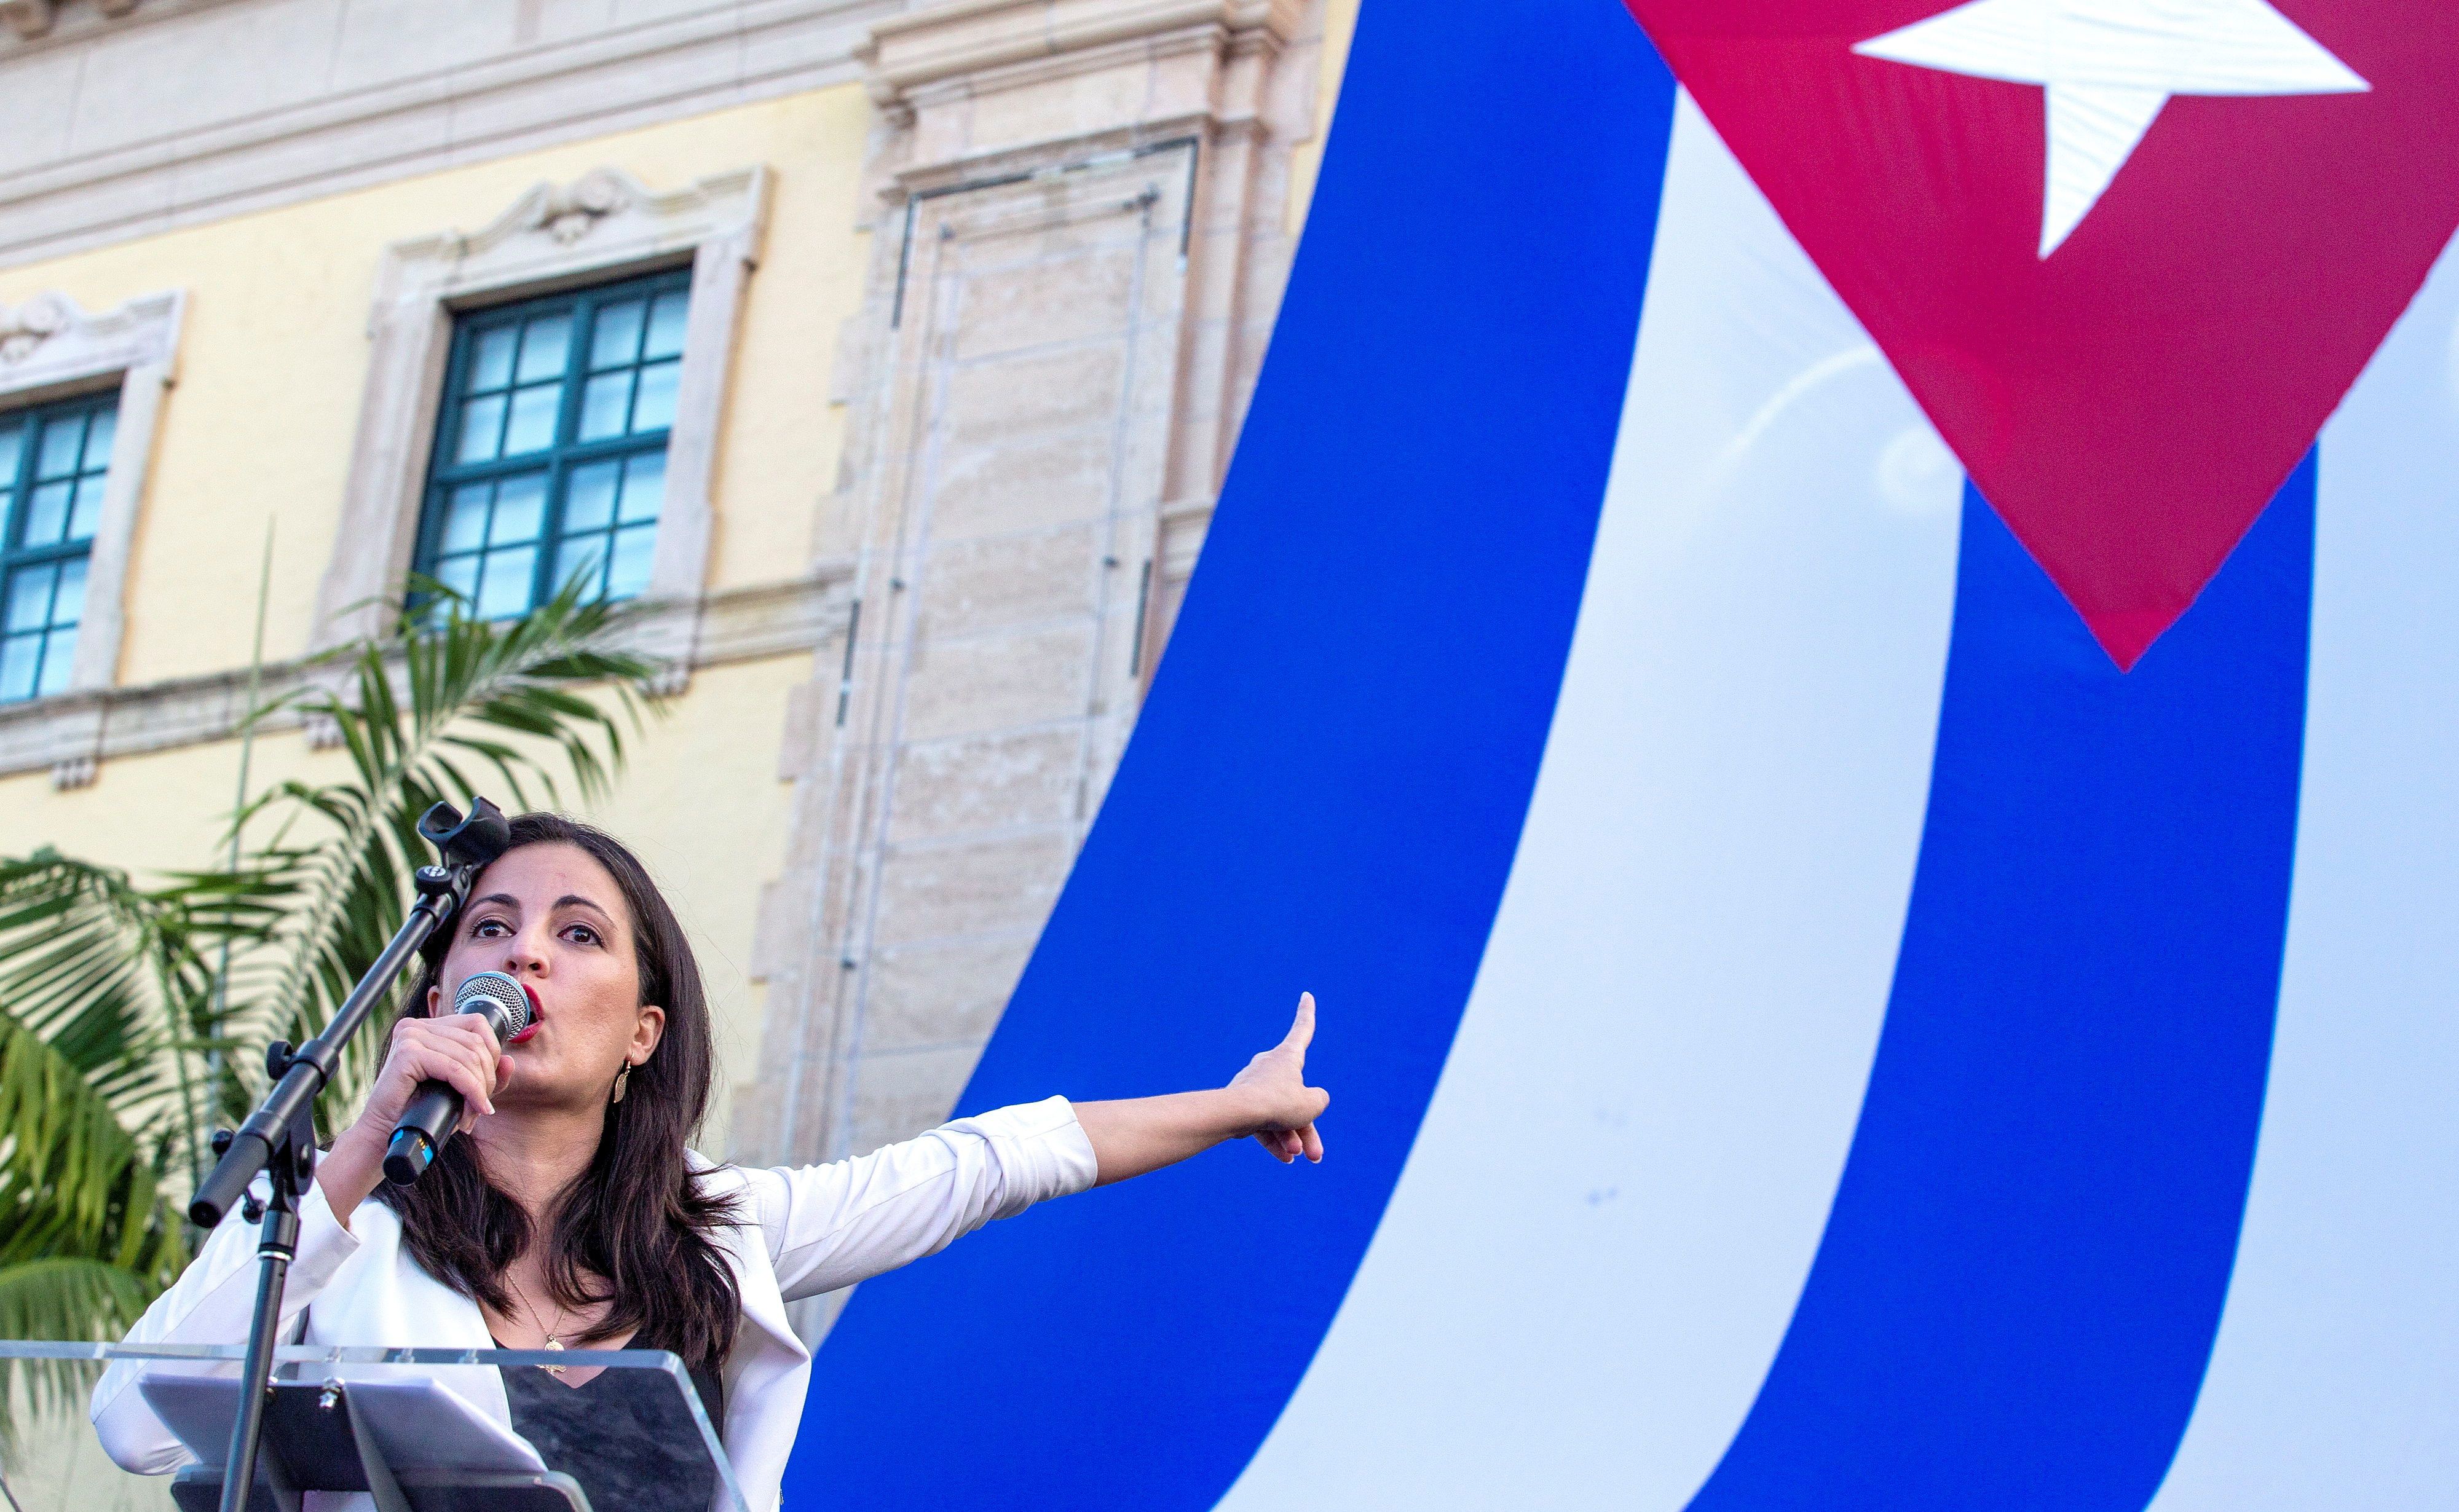 La disidente cubana Rosa María Payá habla durante una manifestación de apoyo a las protestas en Cuba, frente a la Torre de la Libertad en Miami, Florida (EE.UU.), hoy 17 de julio de 2021. EFE/EPA/CRISTOBAL HERRERA-ULASHKEVICH 